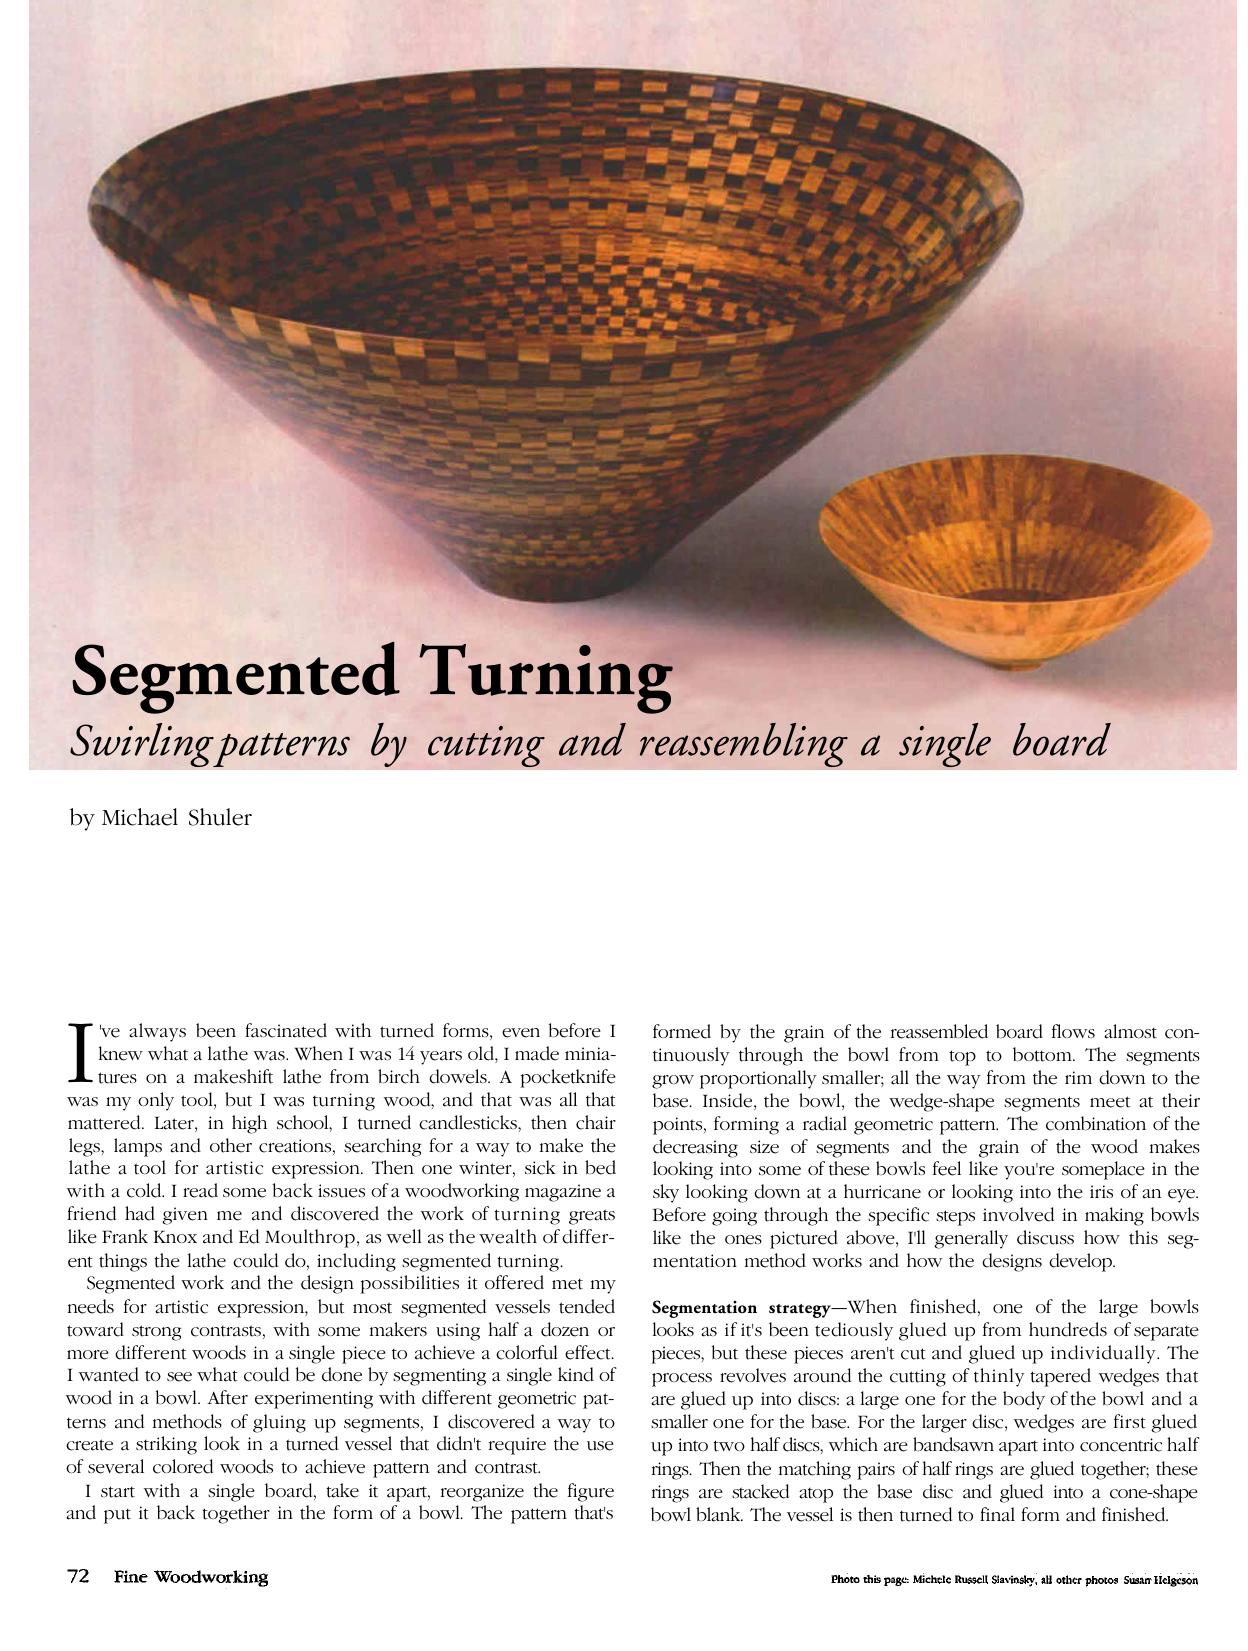 Segmented Turning by Michael Shuler